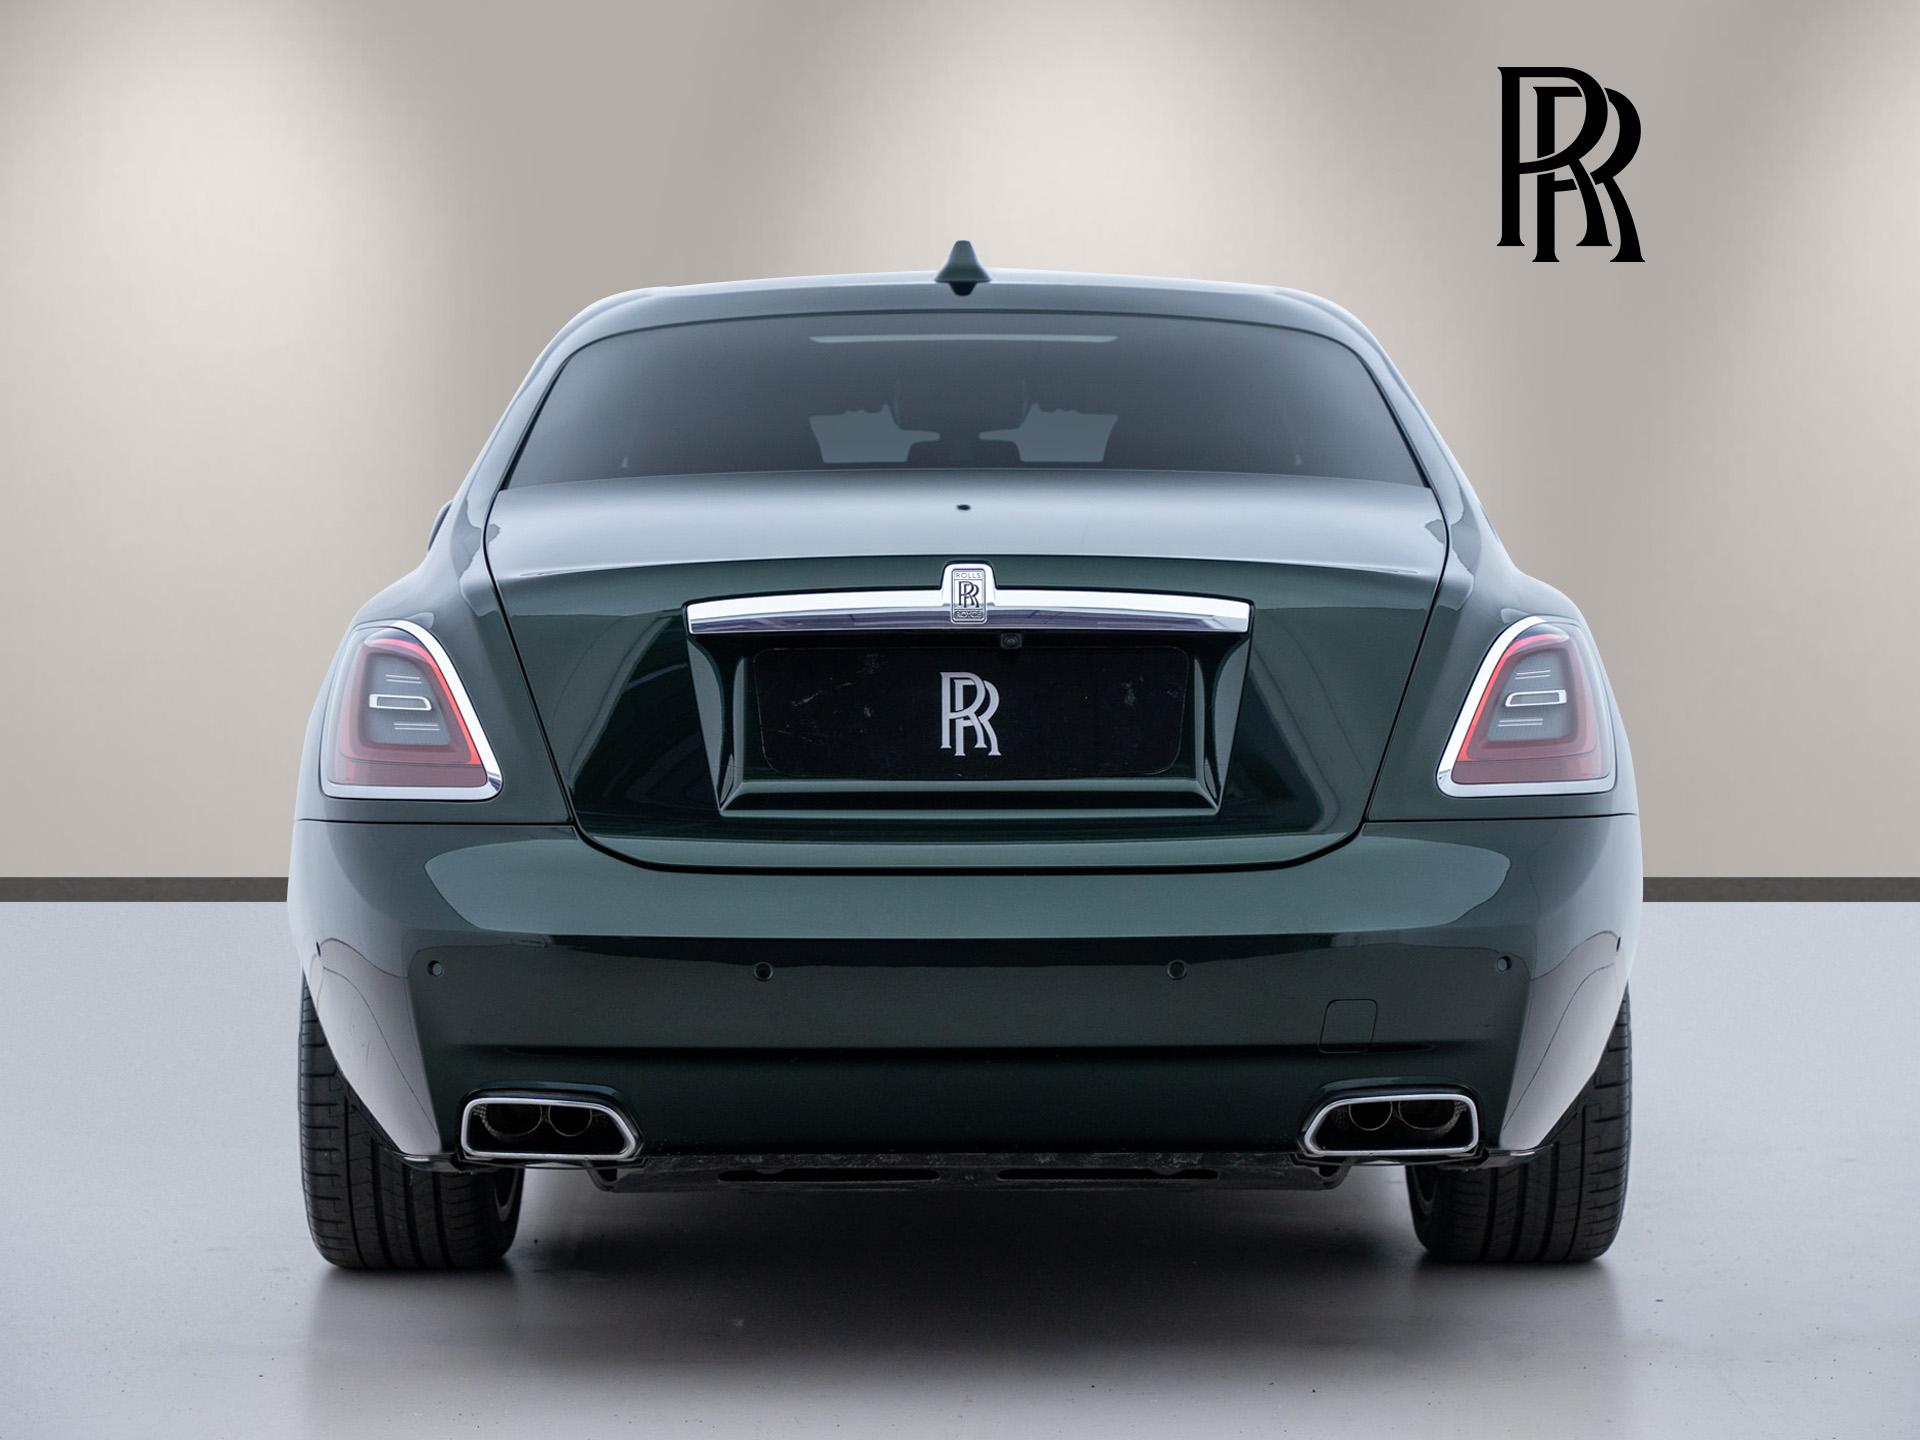 Ghost  từ chiếc Rolls Royce đầu tiên trên thế giới tới biểu tượng của sự  thuần khiết  DoanhnhanPlusvn